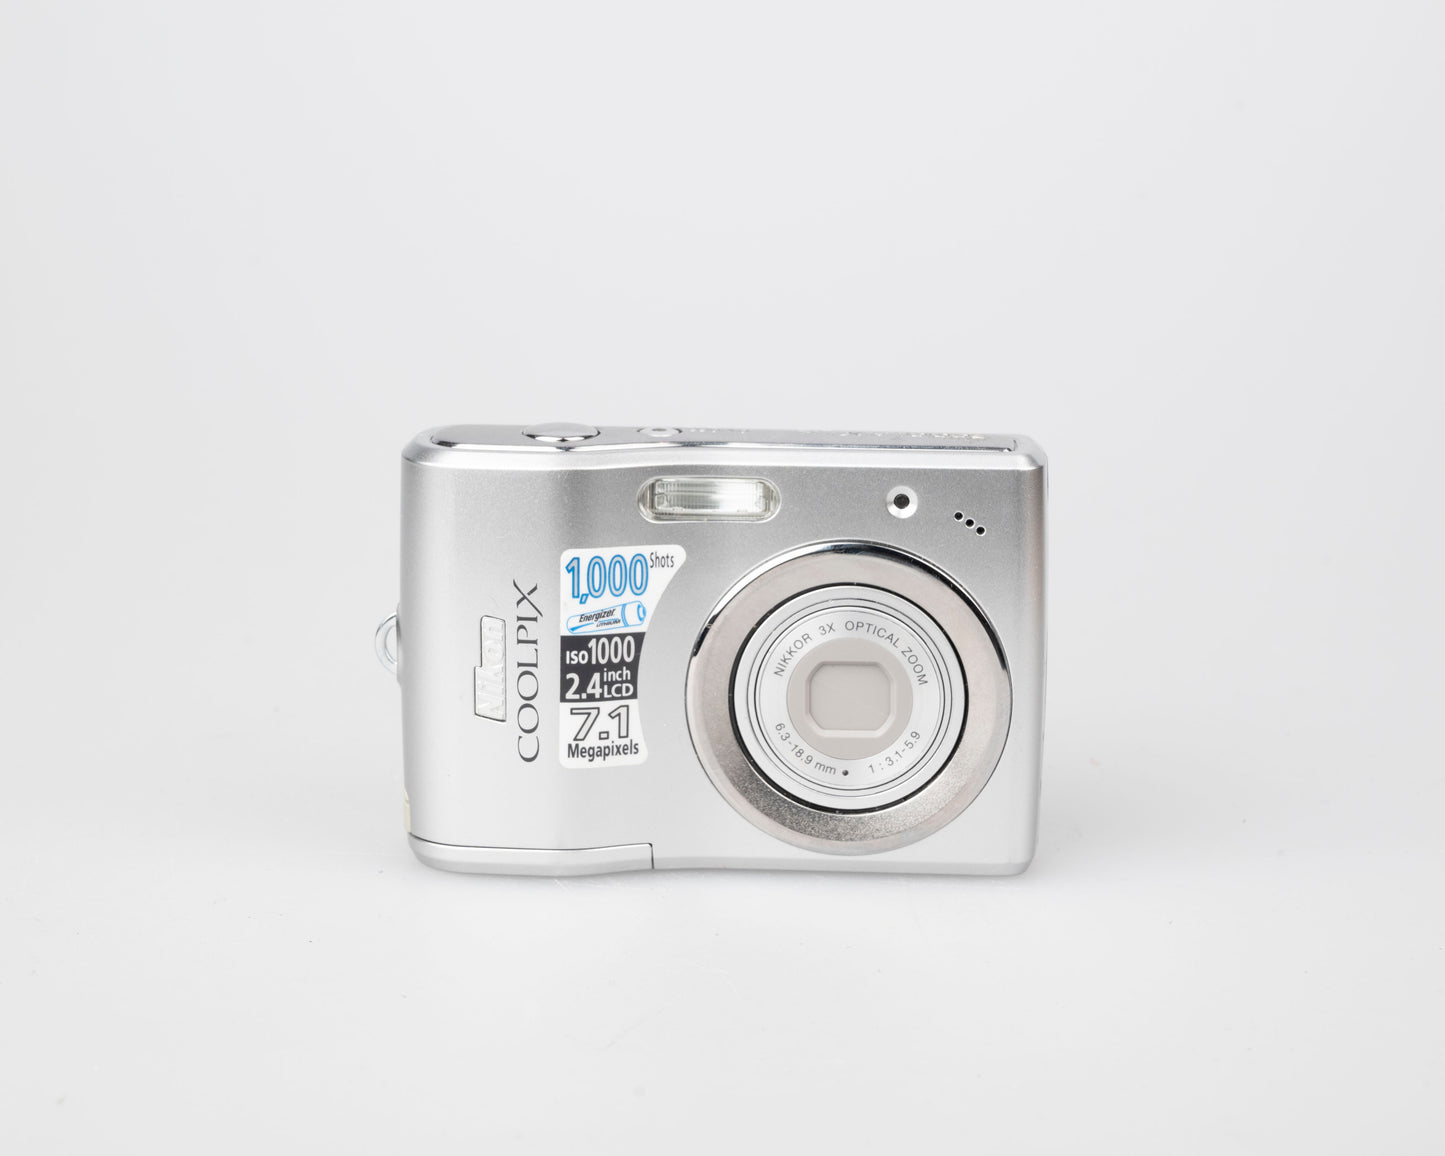 Appareil photo numérique à capteur CCD Nikon Coolpix L14 7,1 MP (utilise des piles AA et des cartes mémoire SD)